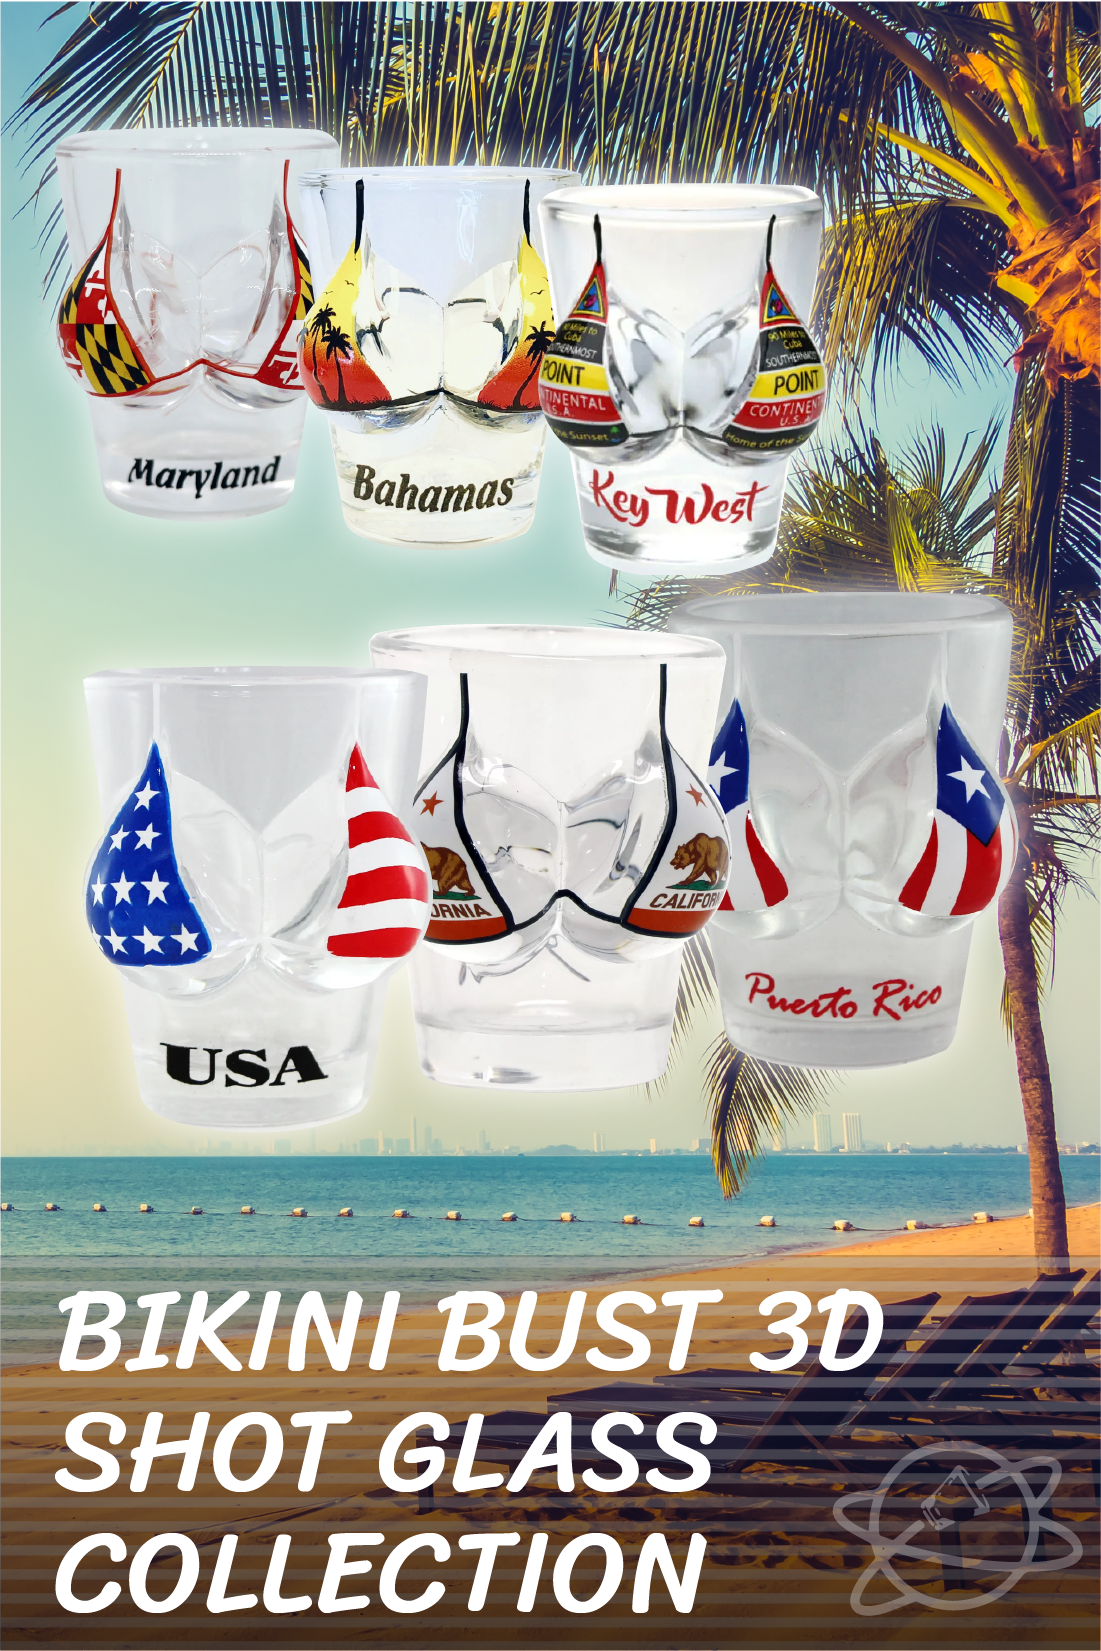 Bikini Bust 3D Shot Glass Collection